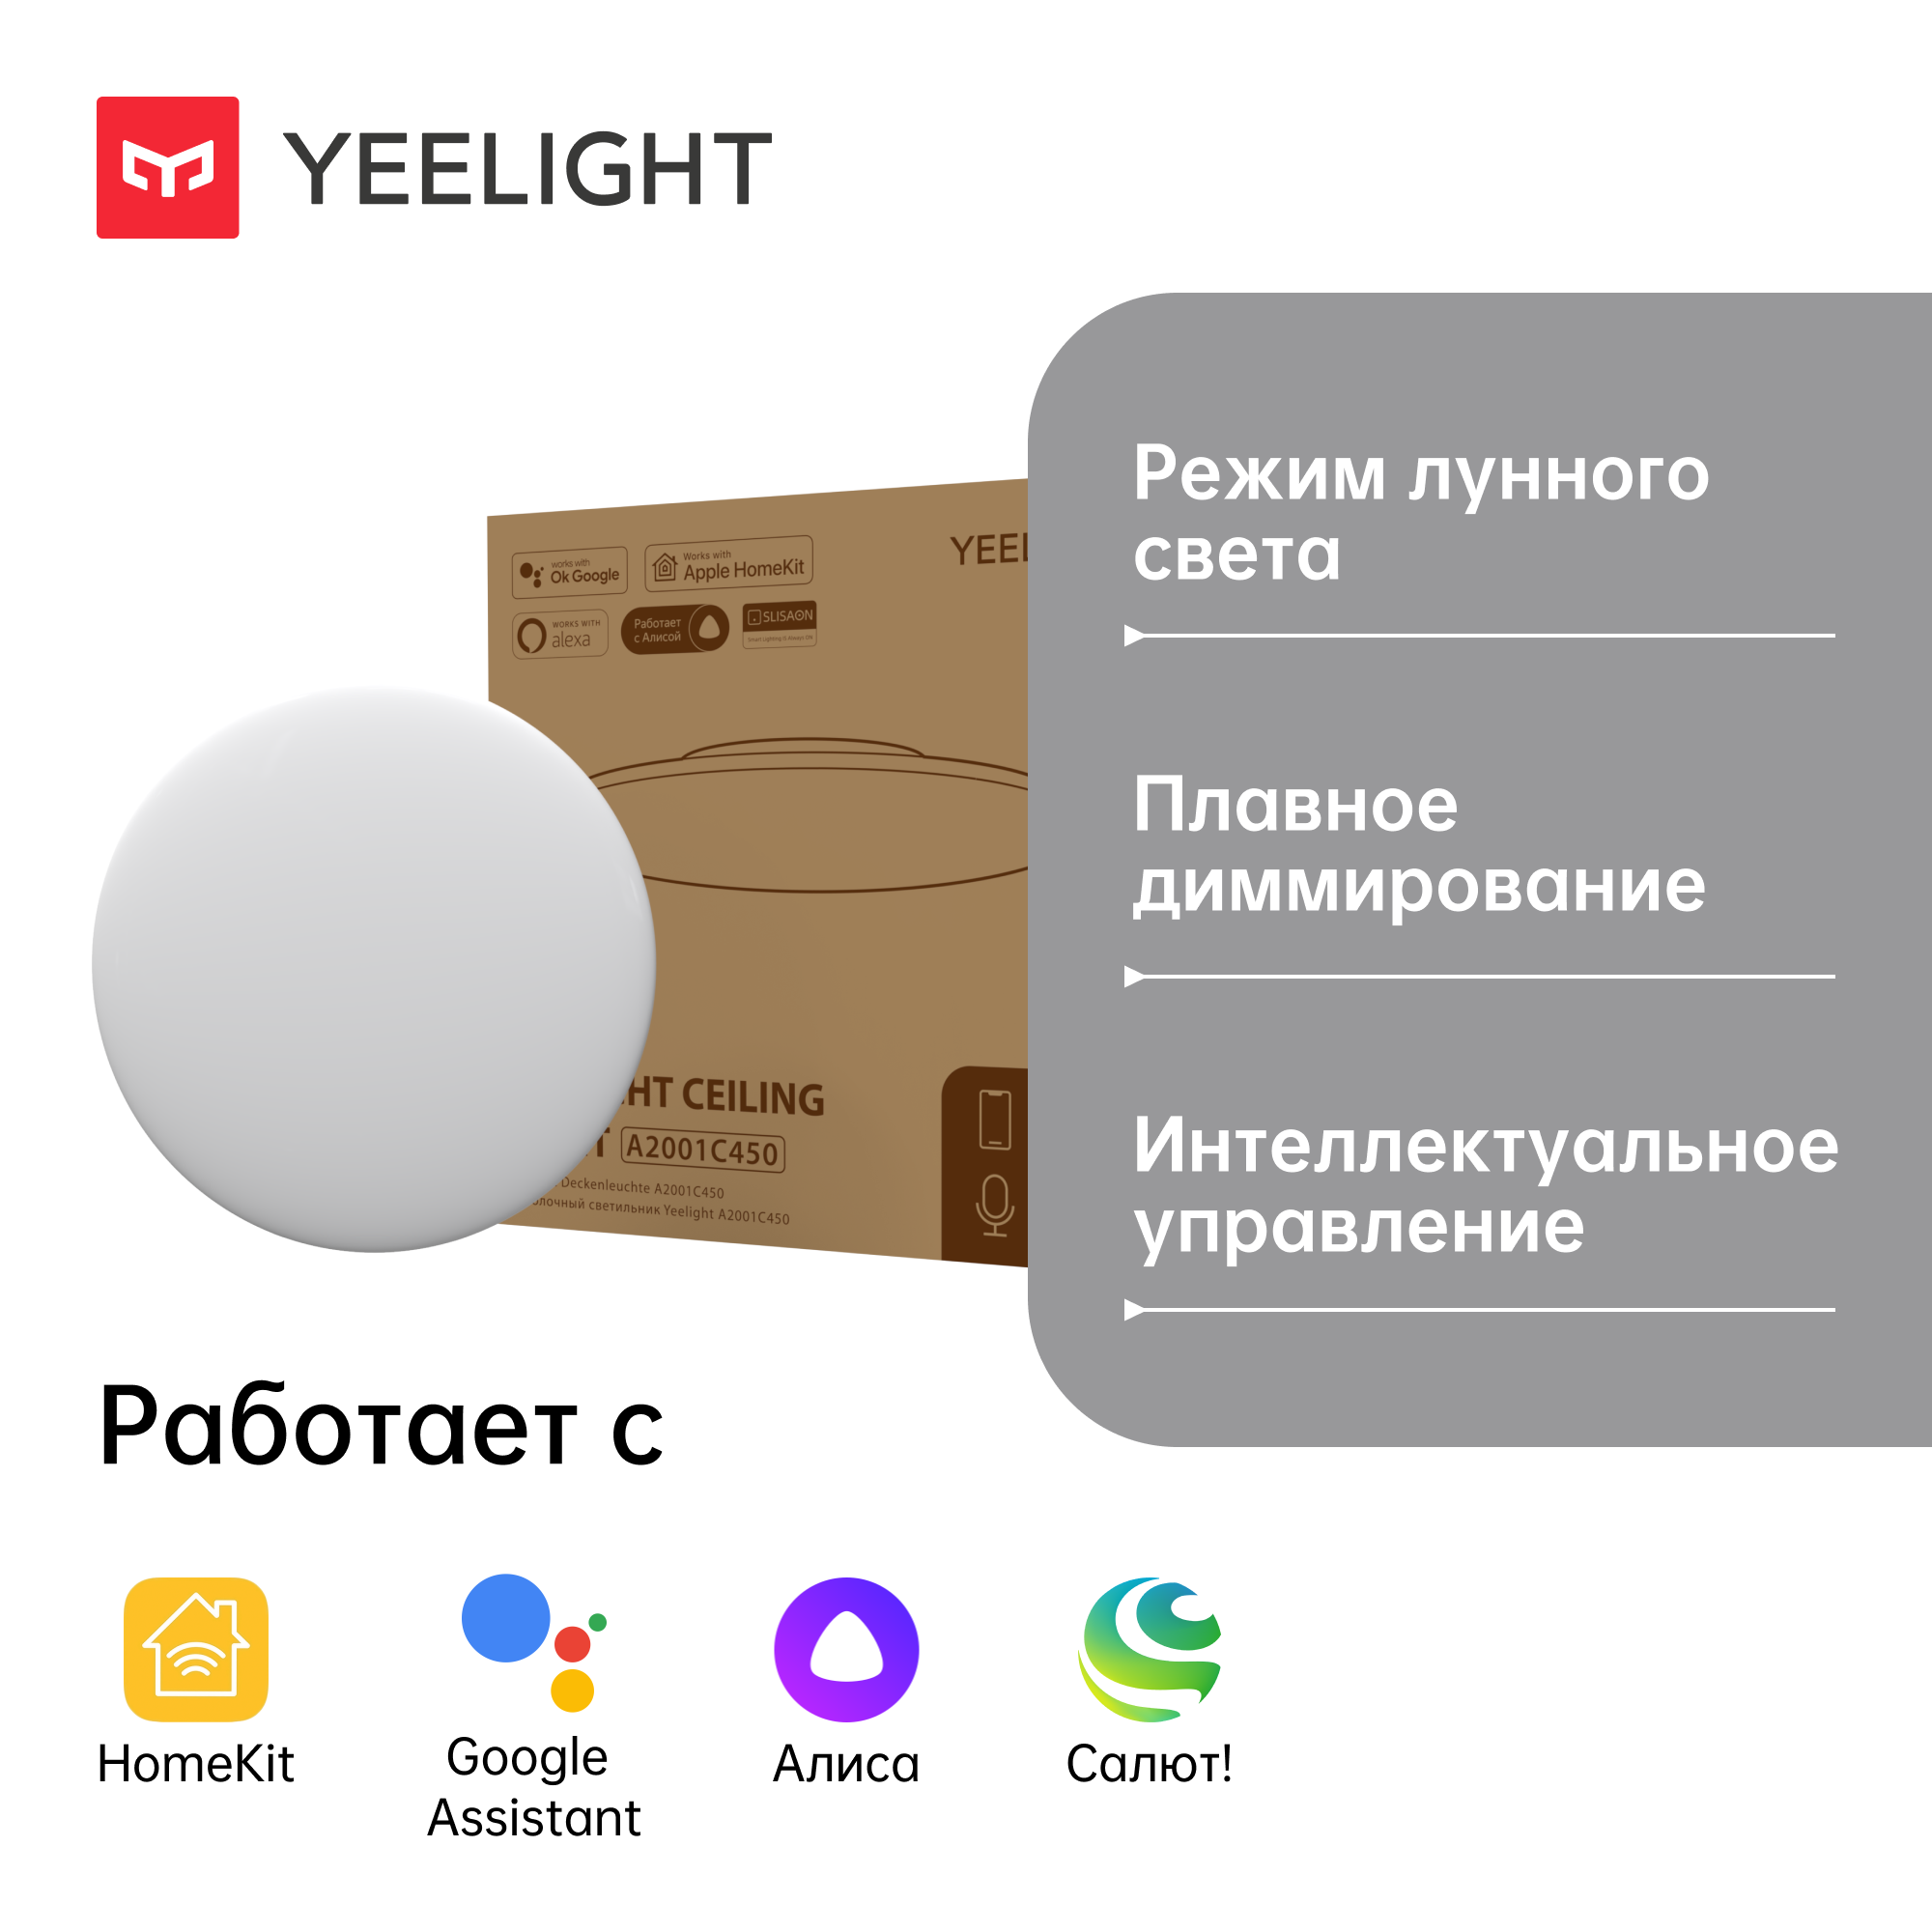 Светильник потолочный Yeelight A2001C450 Ceiling Light умный, YLXD032